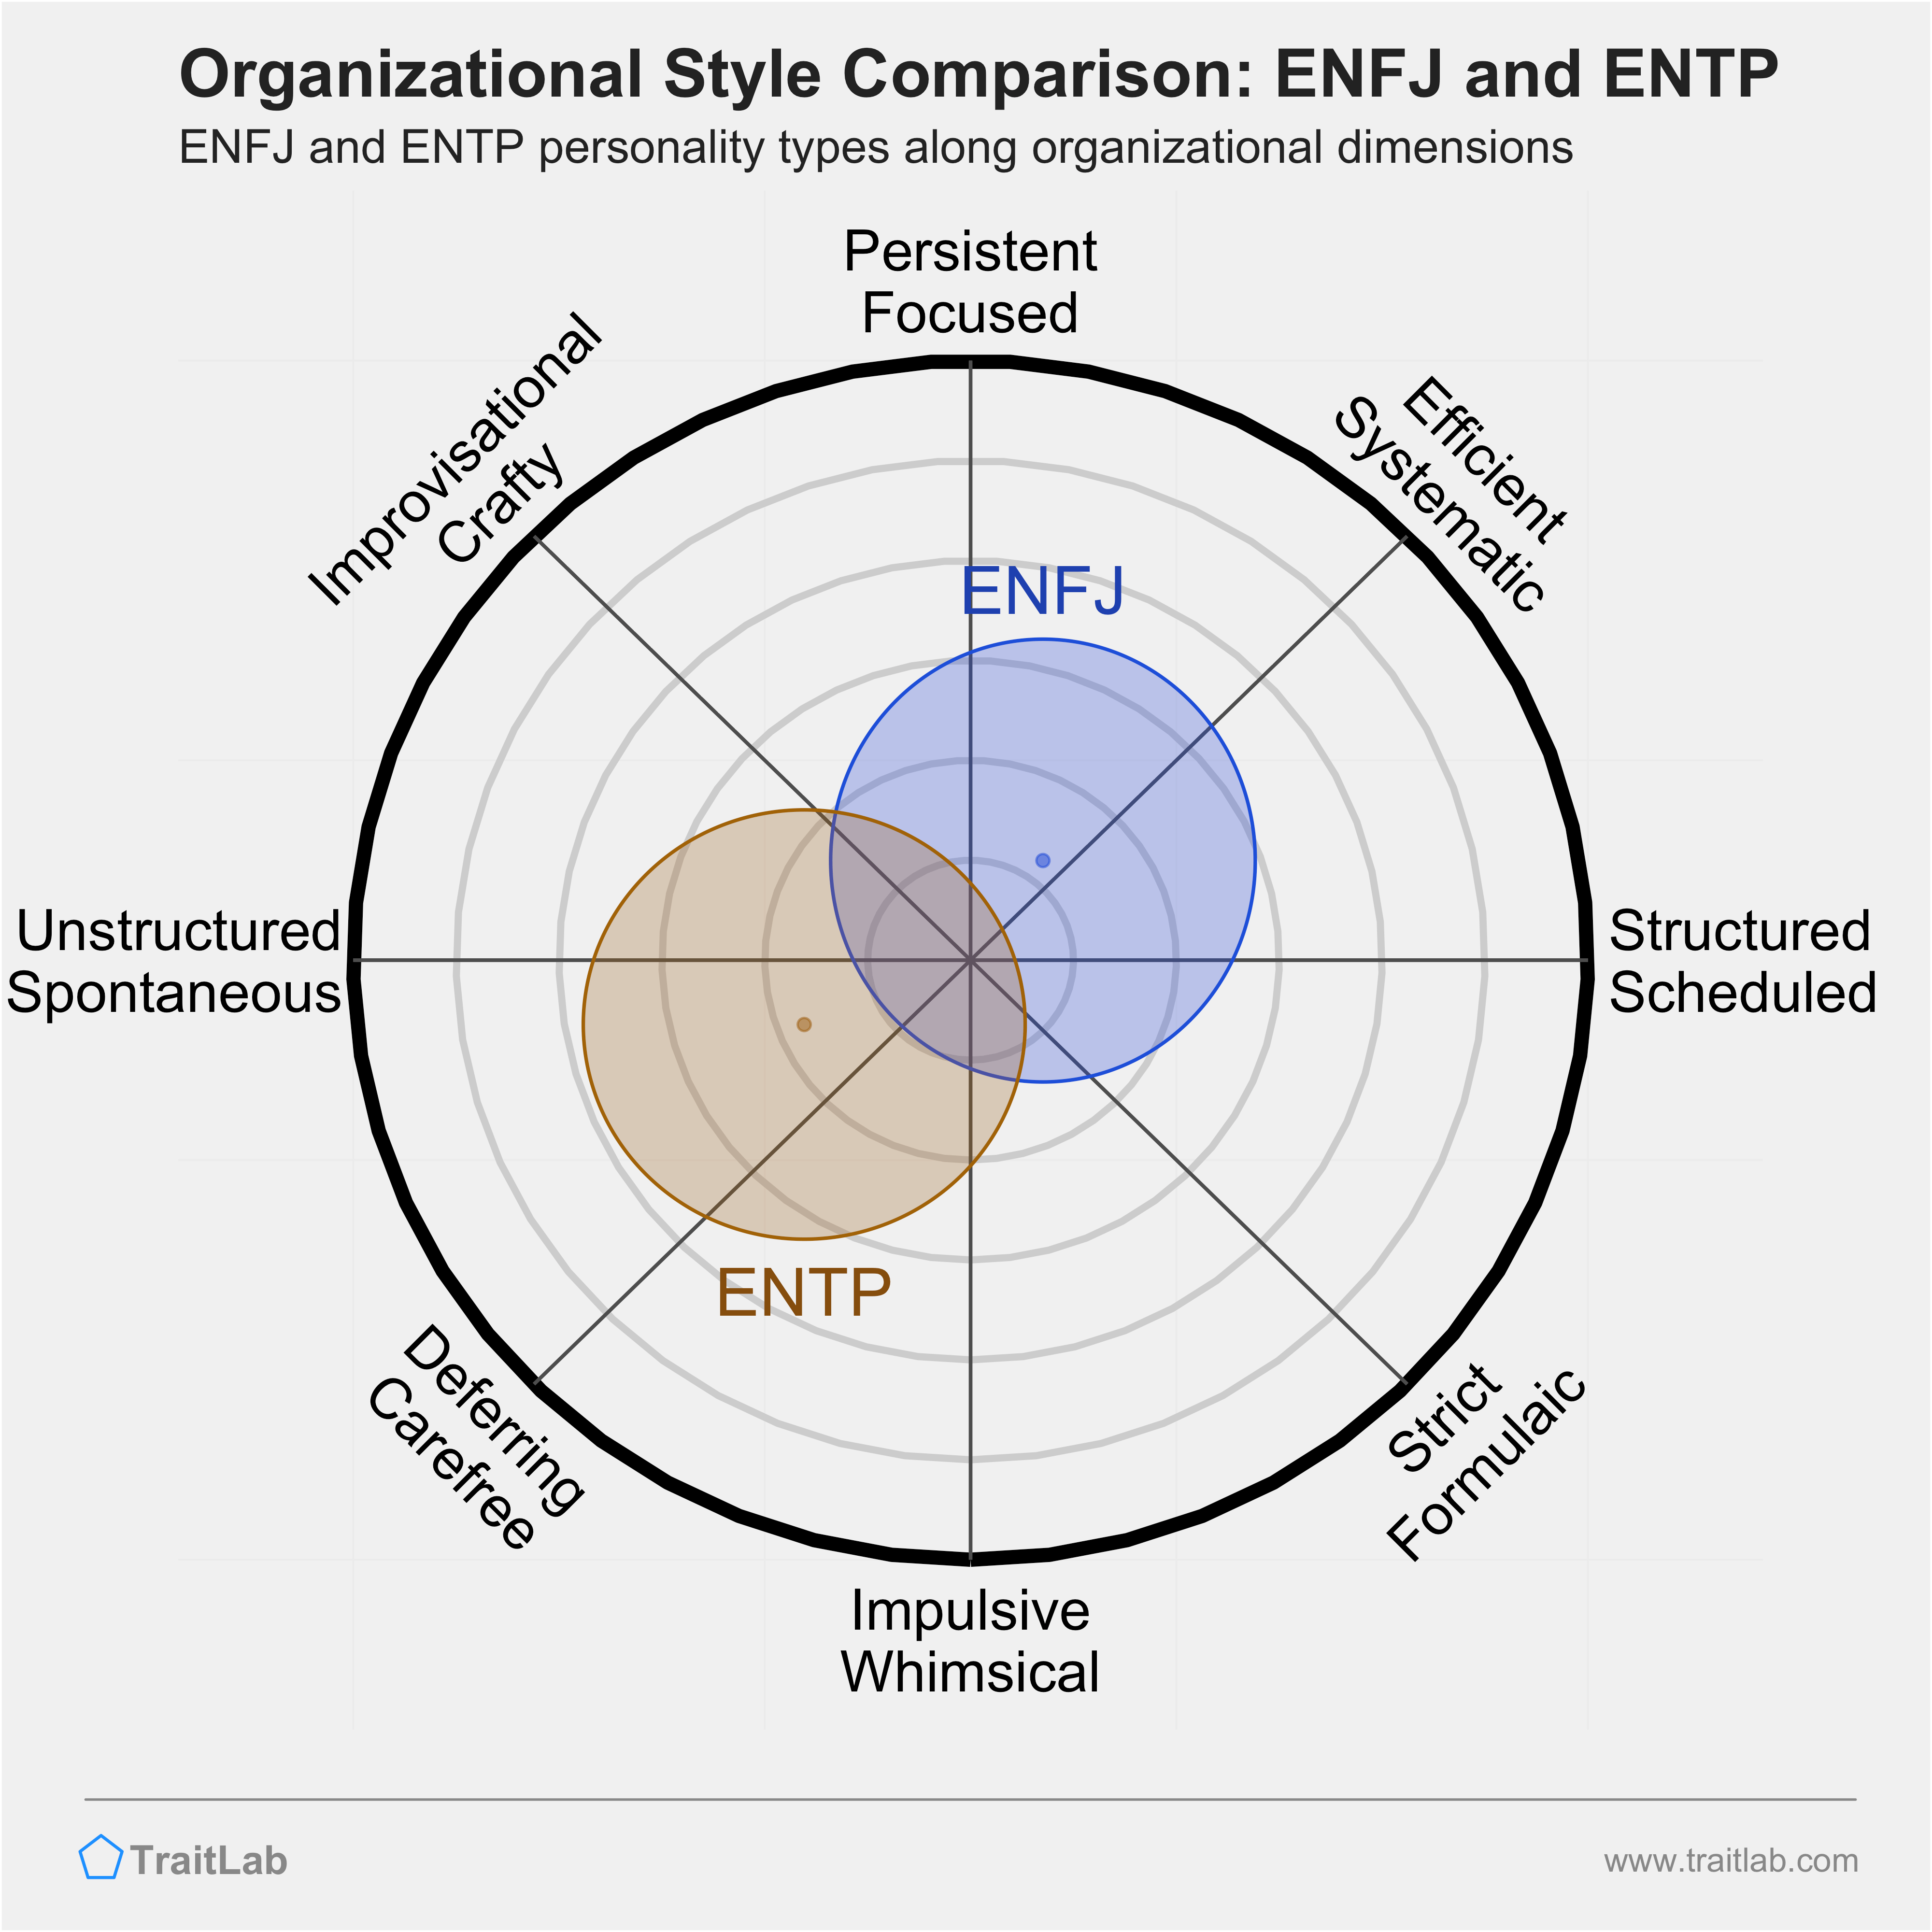 ENFJ and ENTP comparison across organizational dimensions